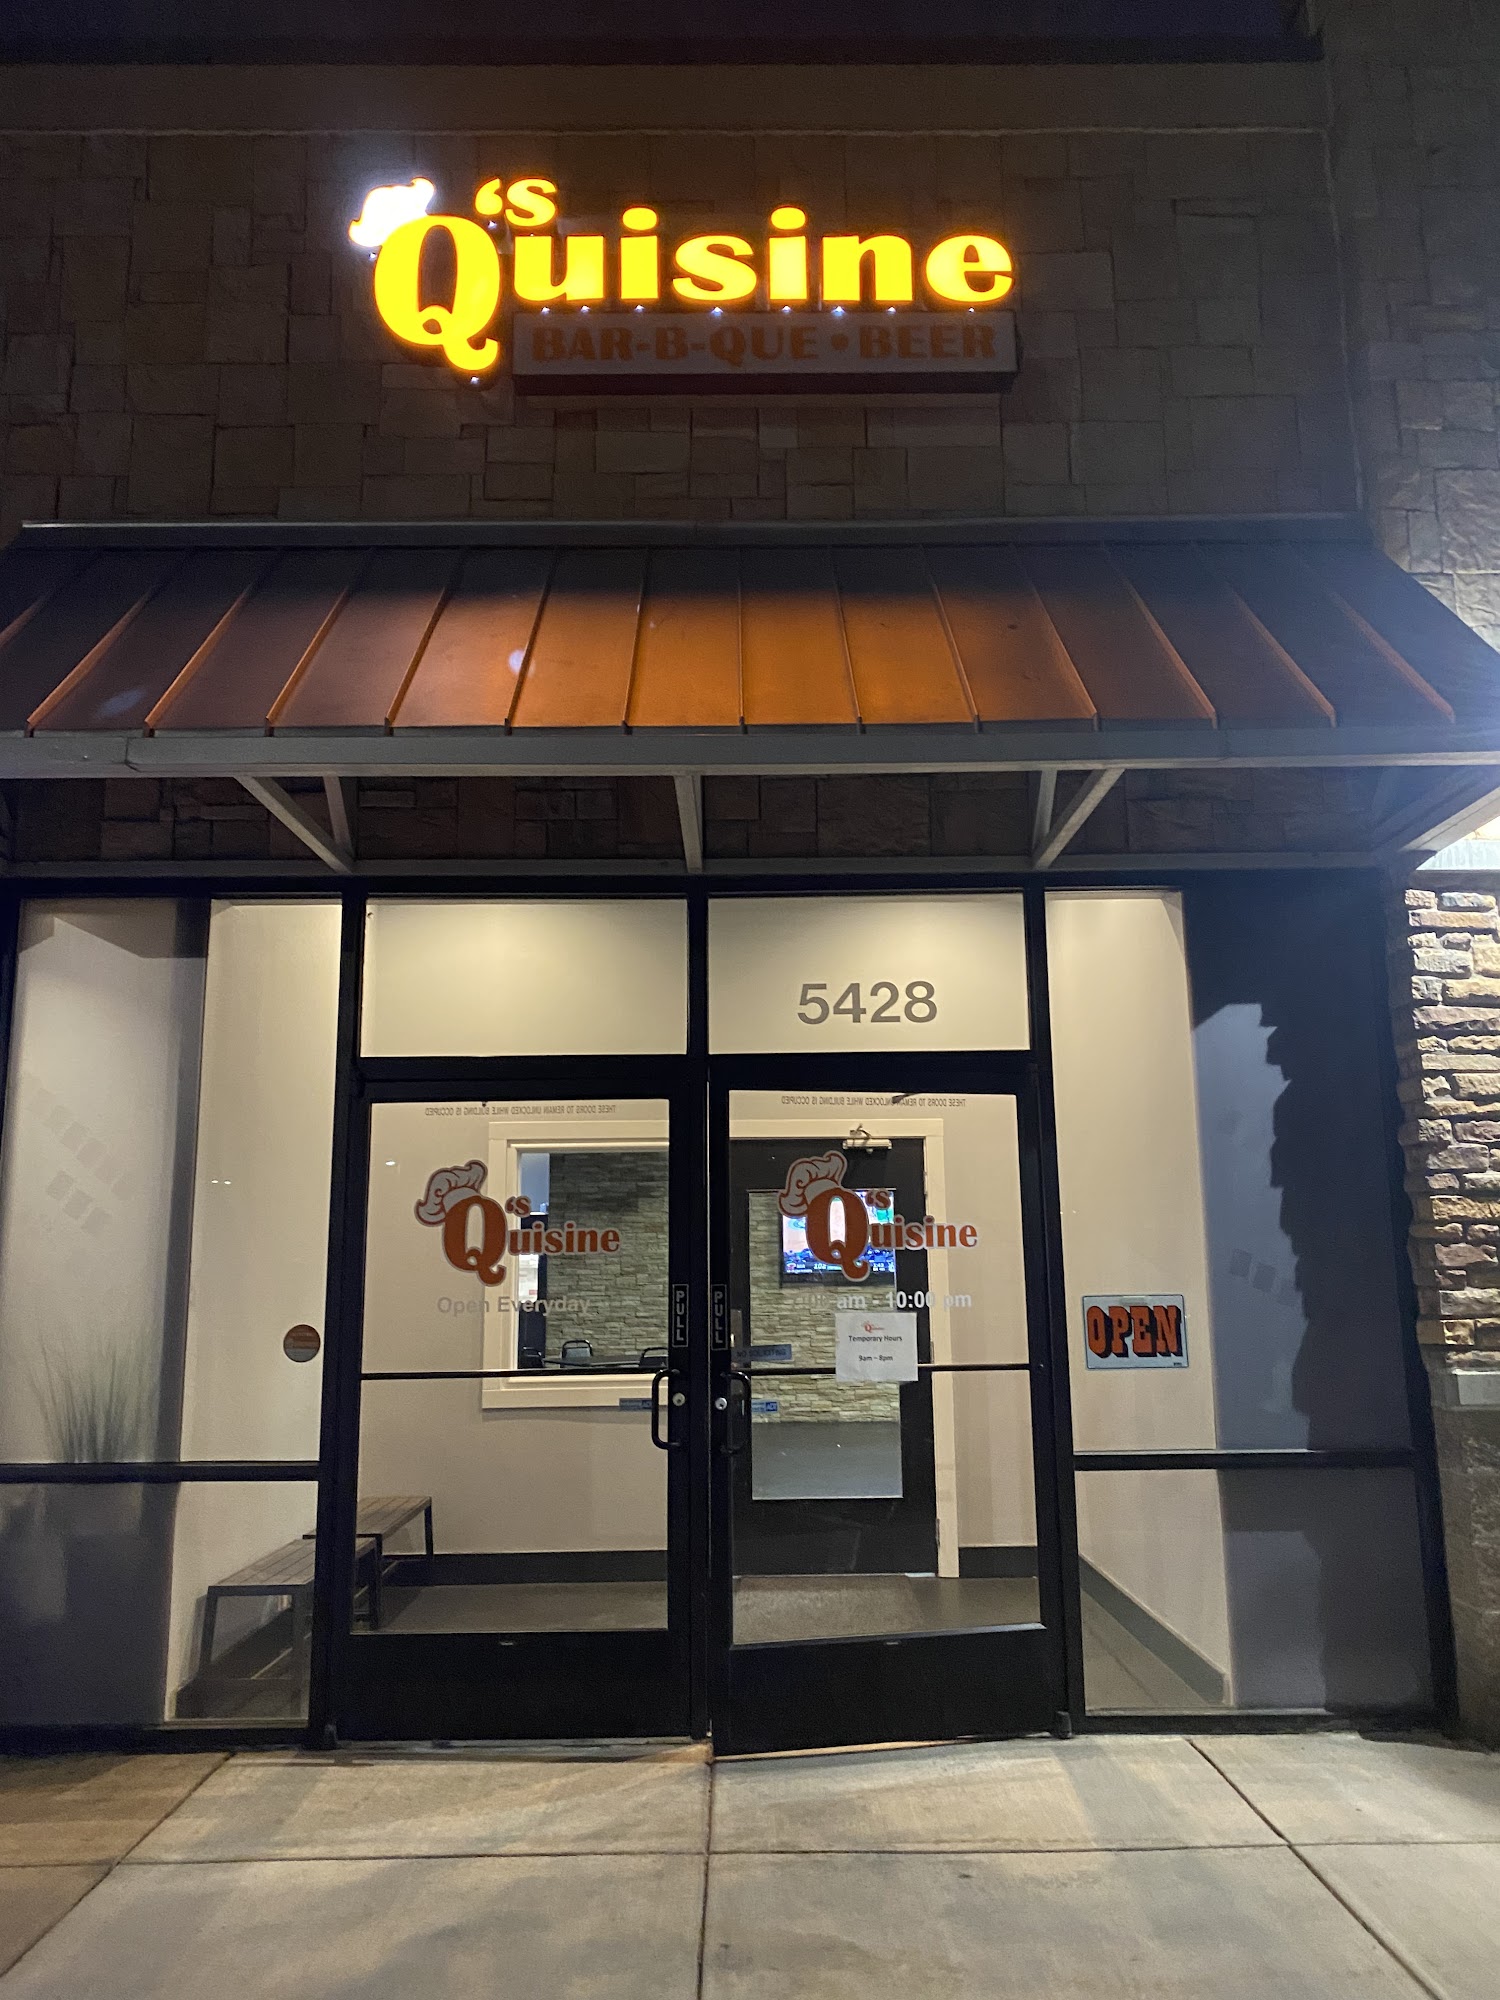 Q’s Quisine